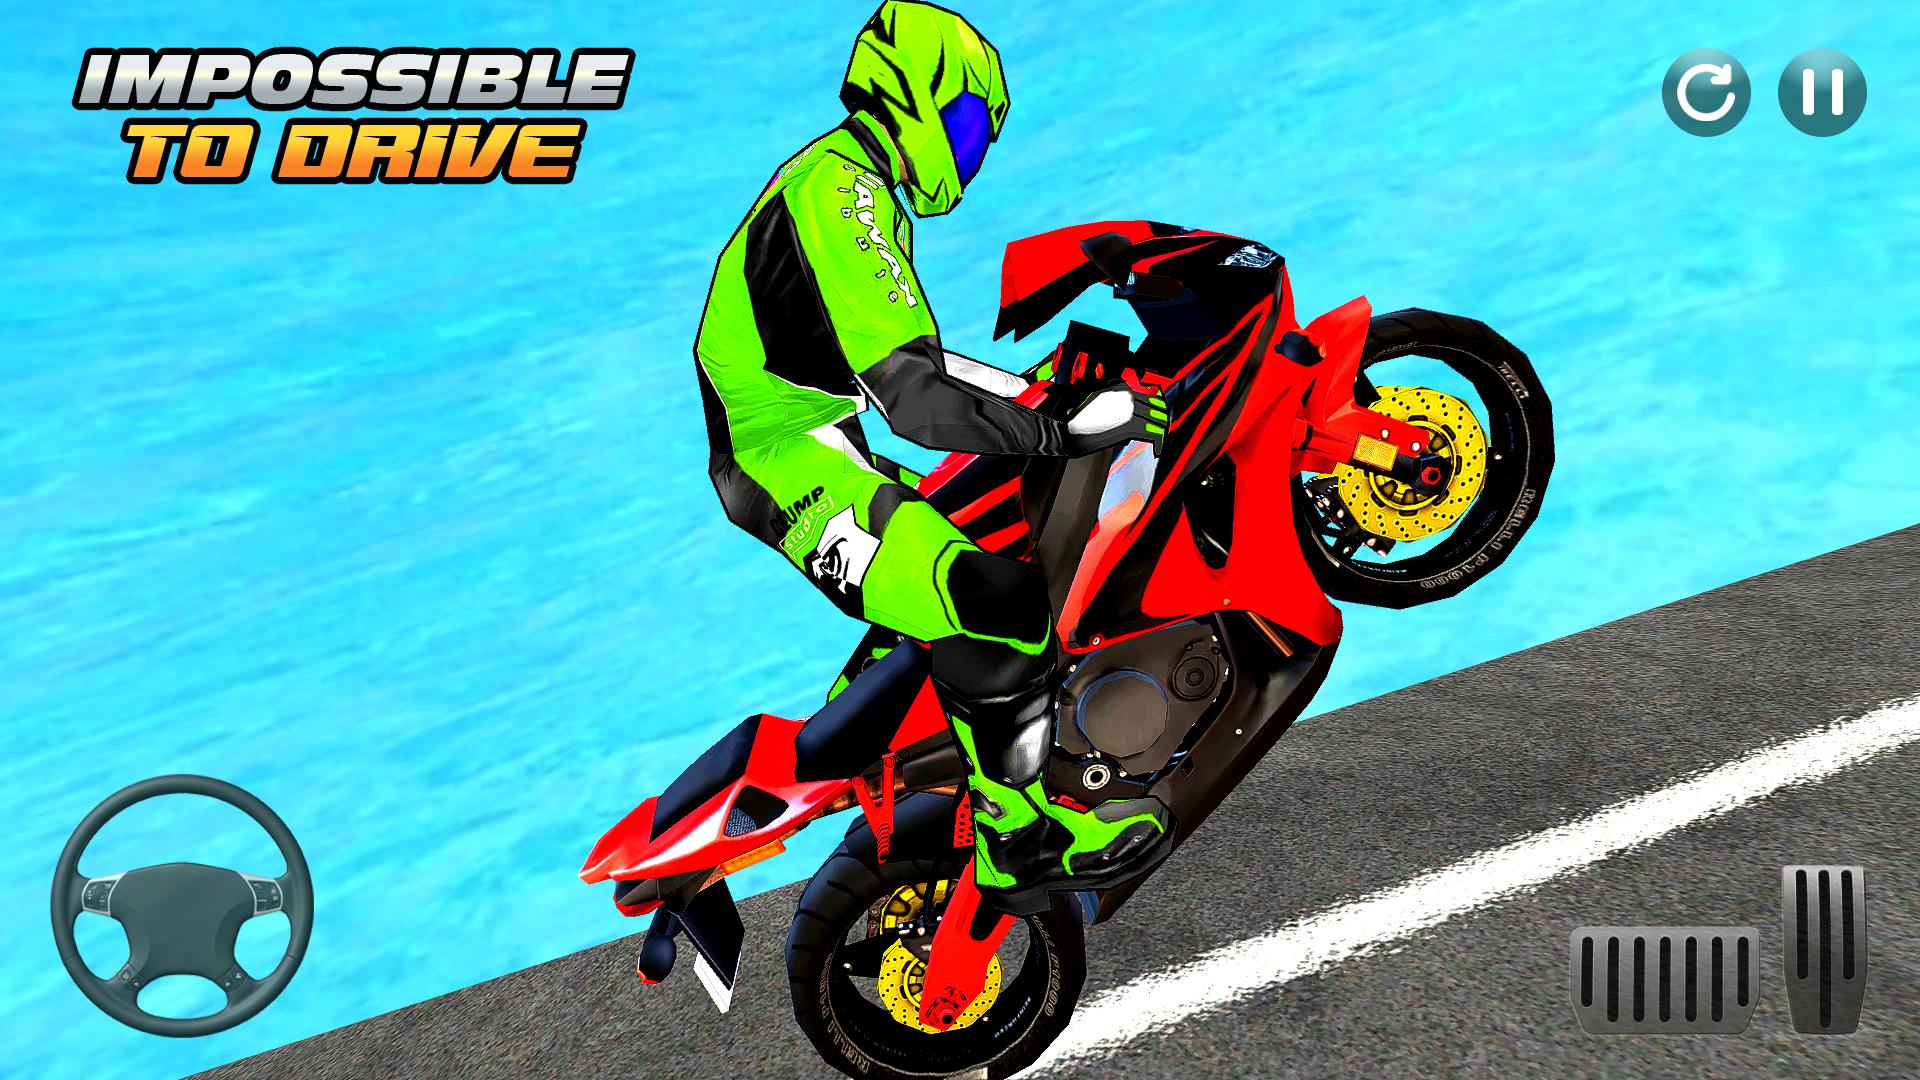 कार गेम Bike Wala Gadi Game APK voor Android Download - Screen 1.jpg?fakeurl=1&type=